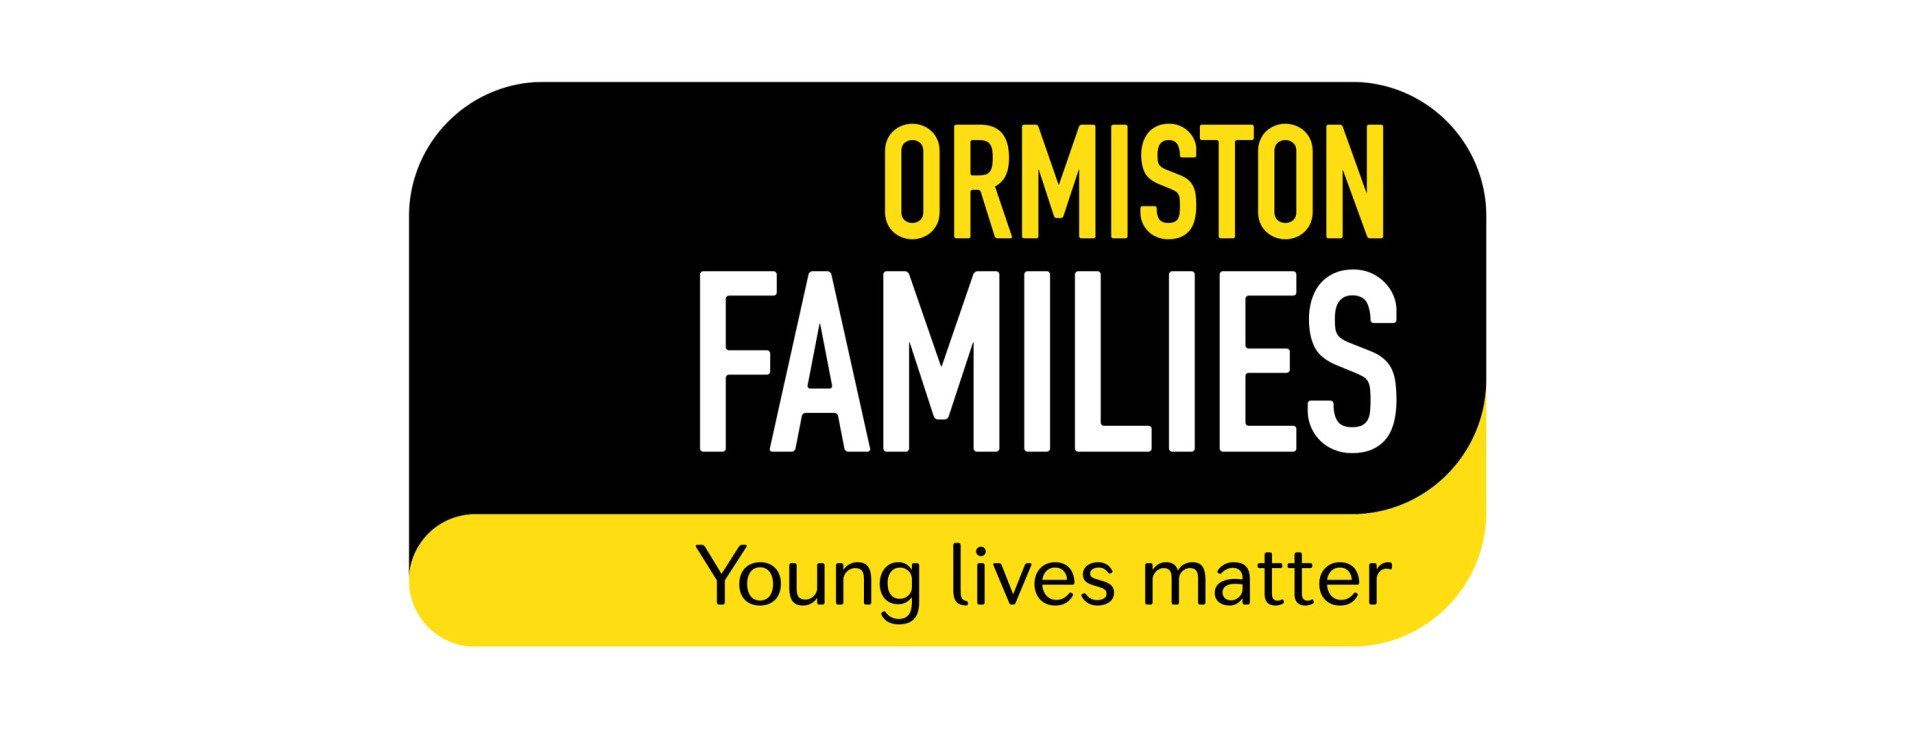 Ormiston Families Logo Design